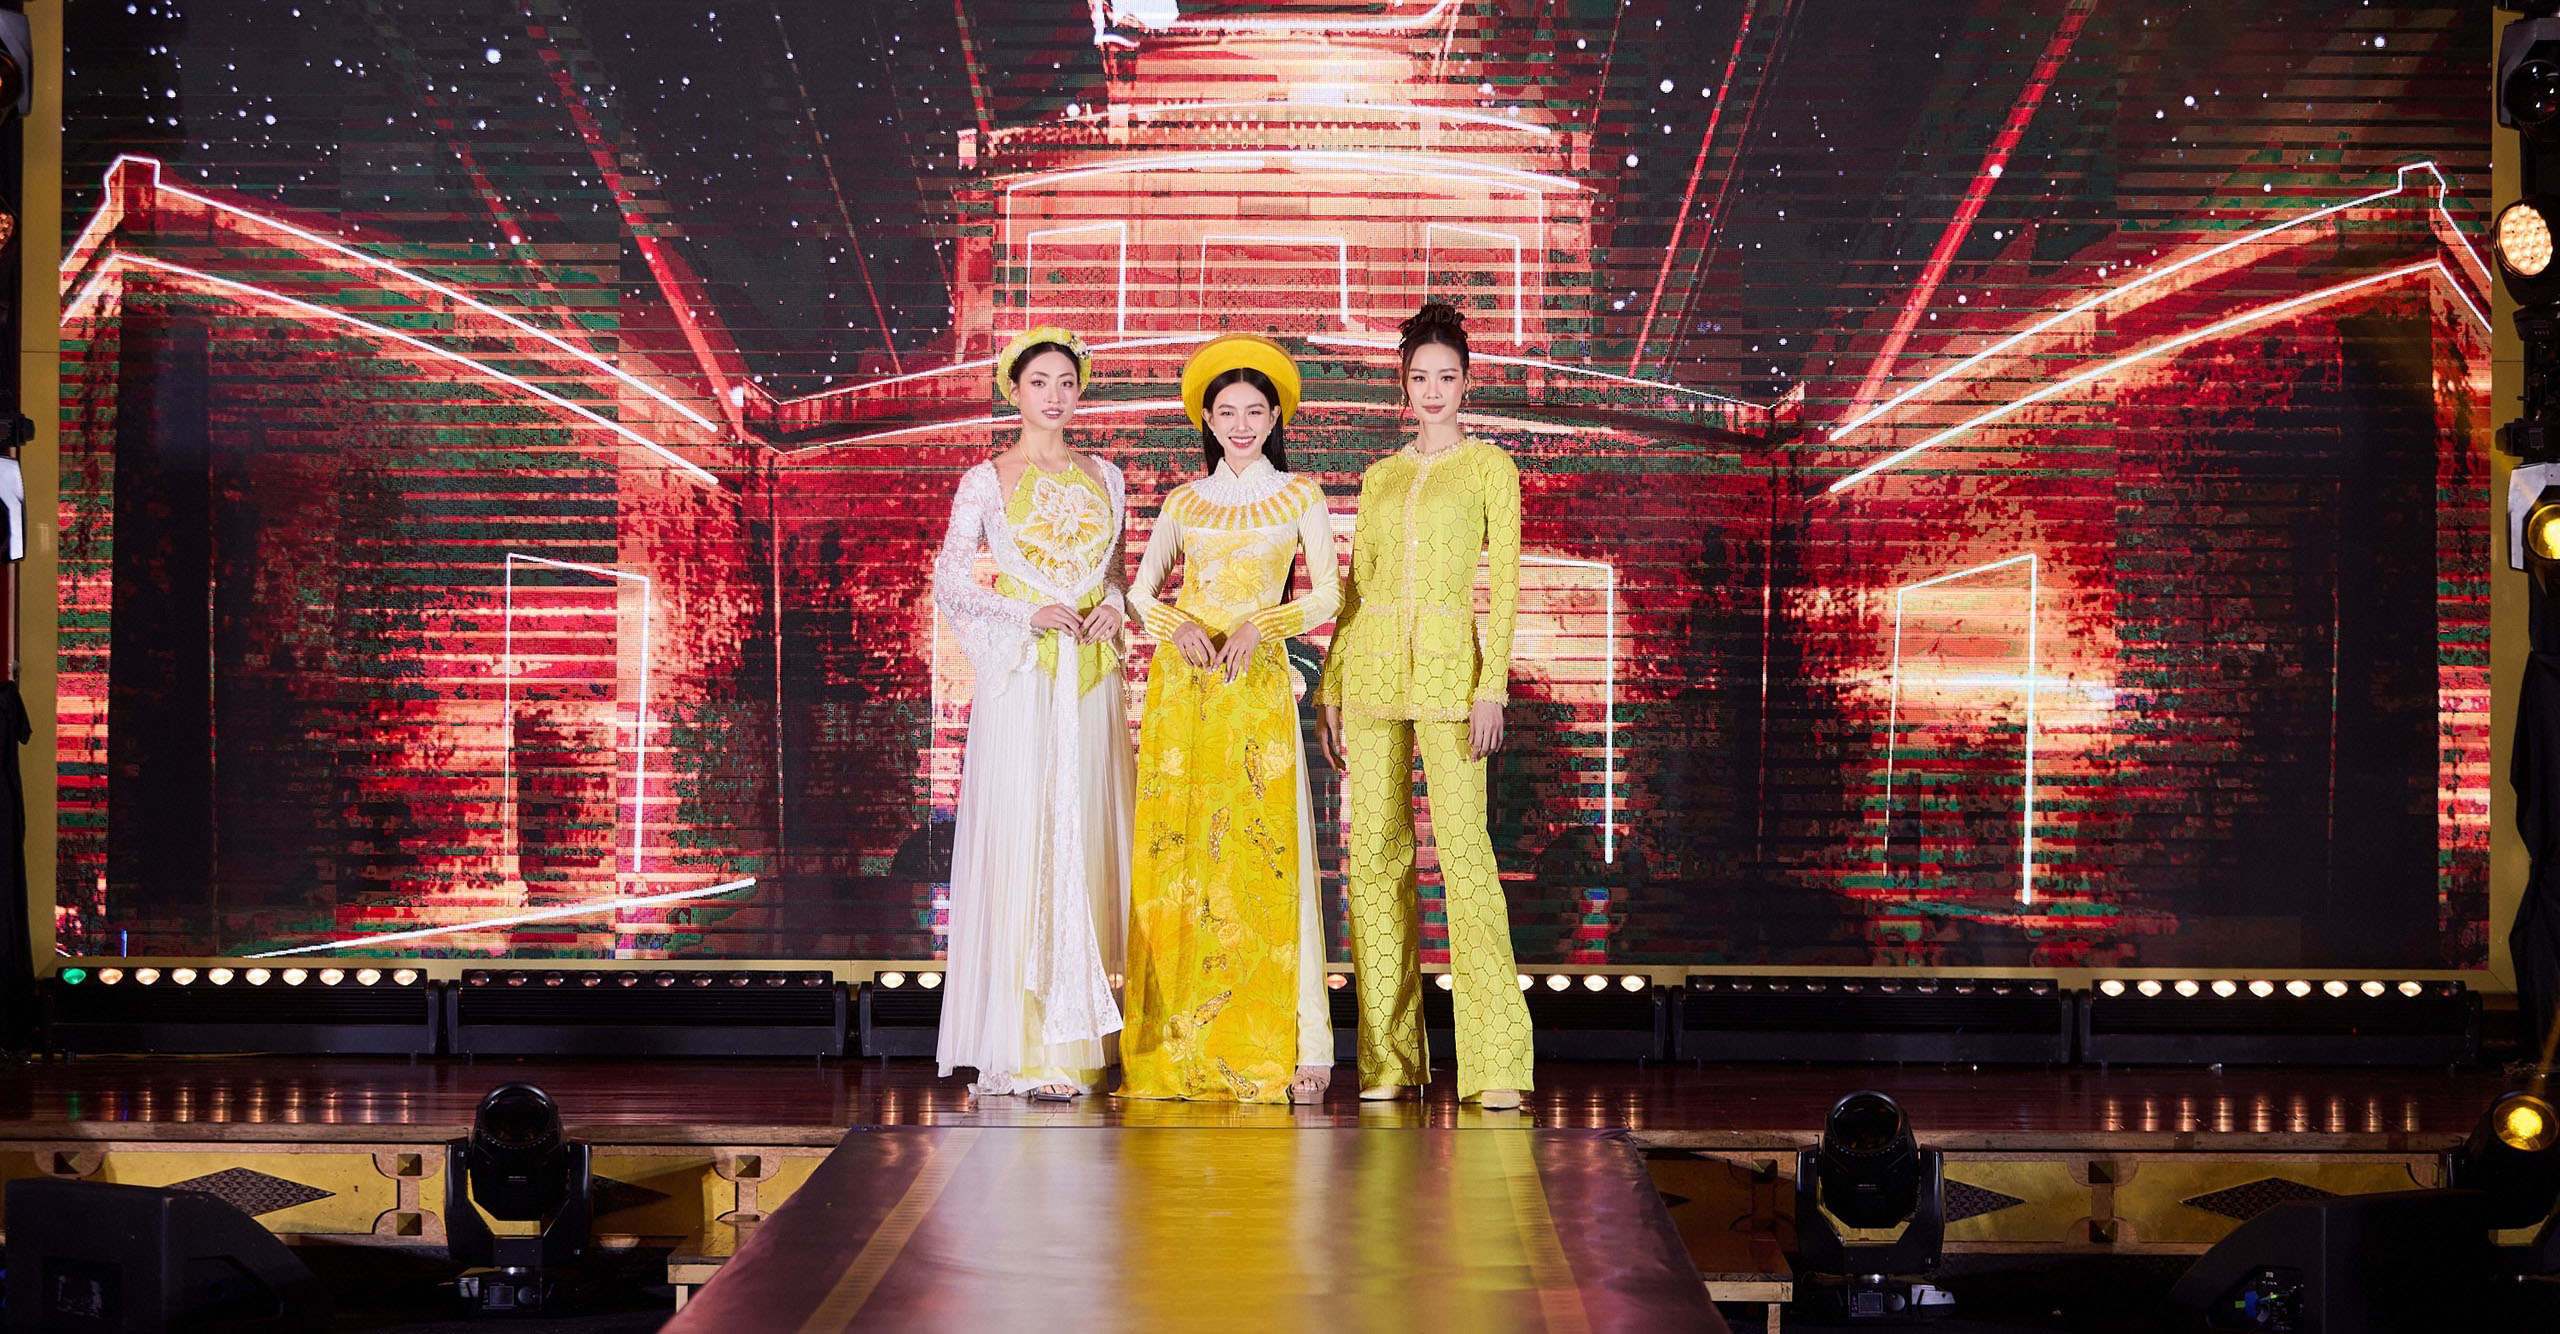 Mở đầu chương trình, 3 đại sứ gây ấn tượng với nhan sắc rạng ngời khi xuất hiện trên sân khấu với bộ trang phục đại diện 3 miền đến từ NTK Bảo Bảo